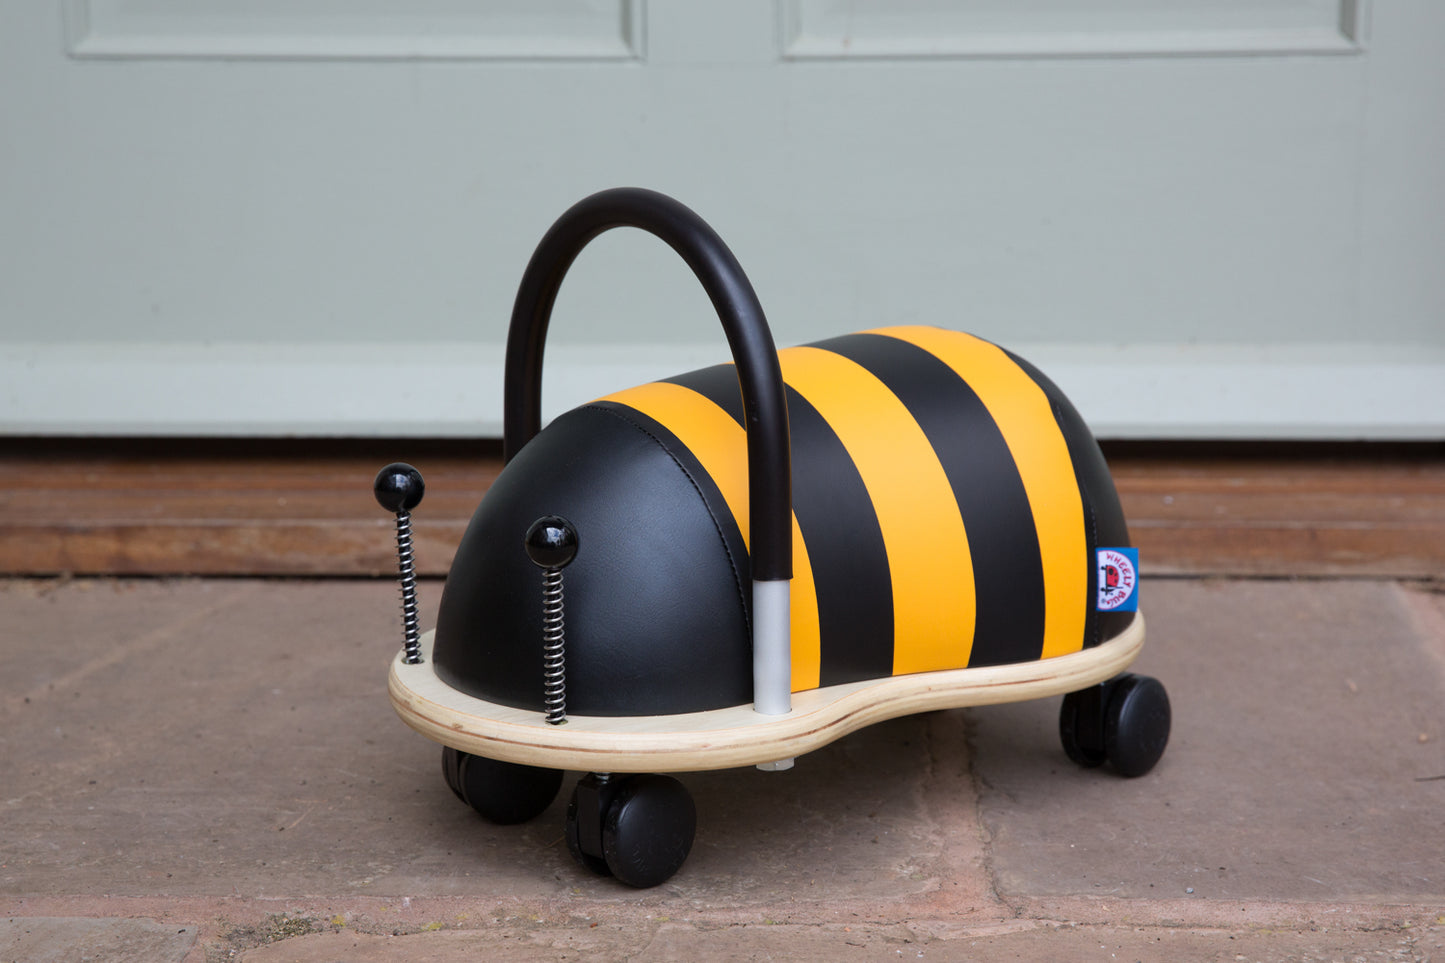 Wheelybug Ride on Bee